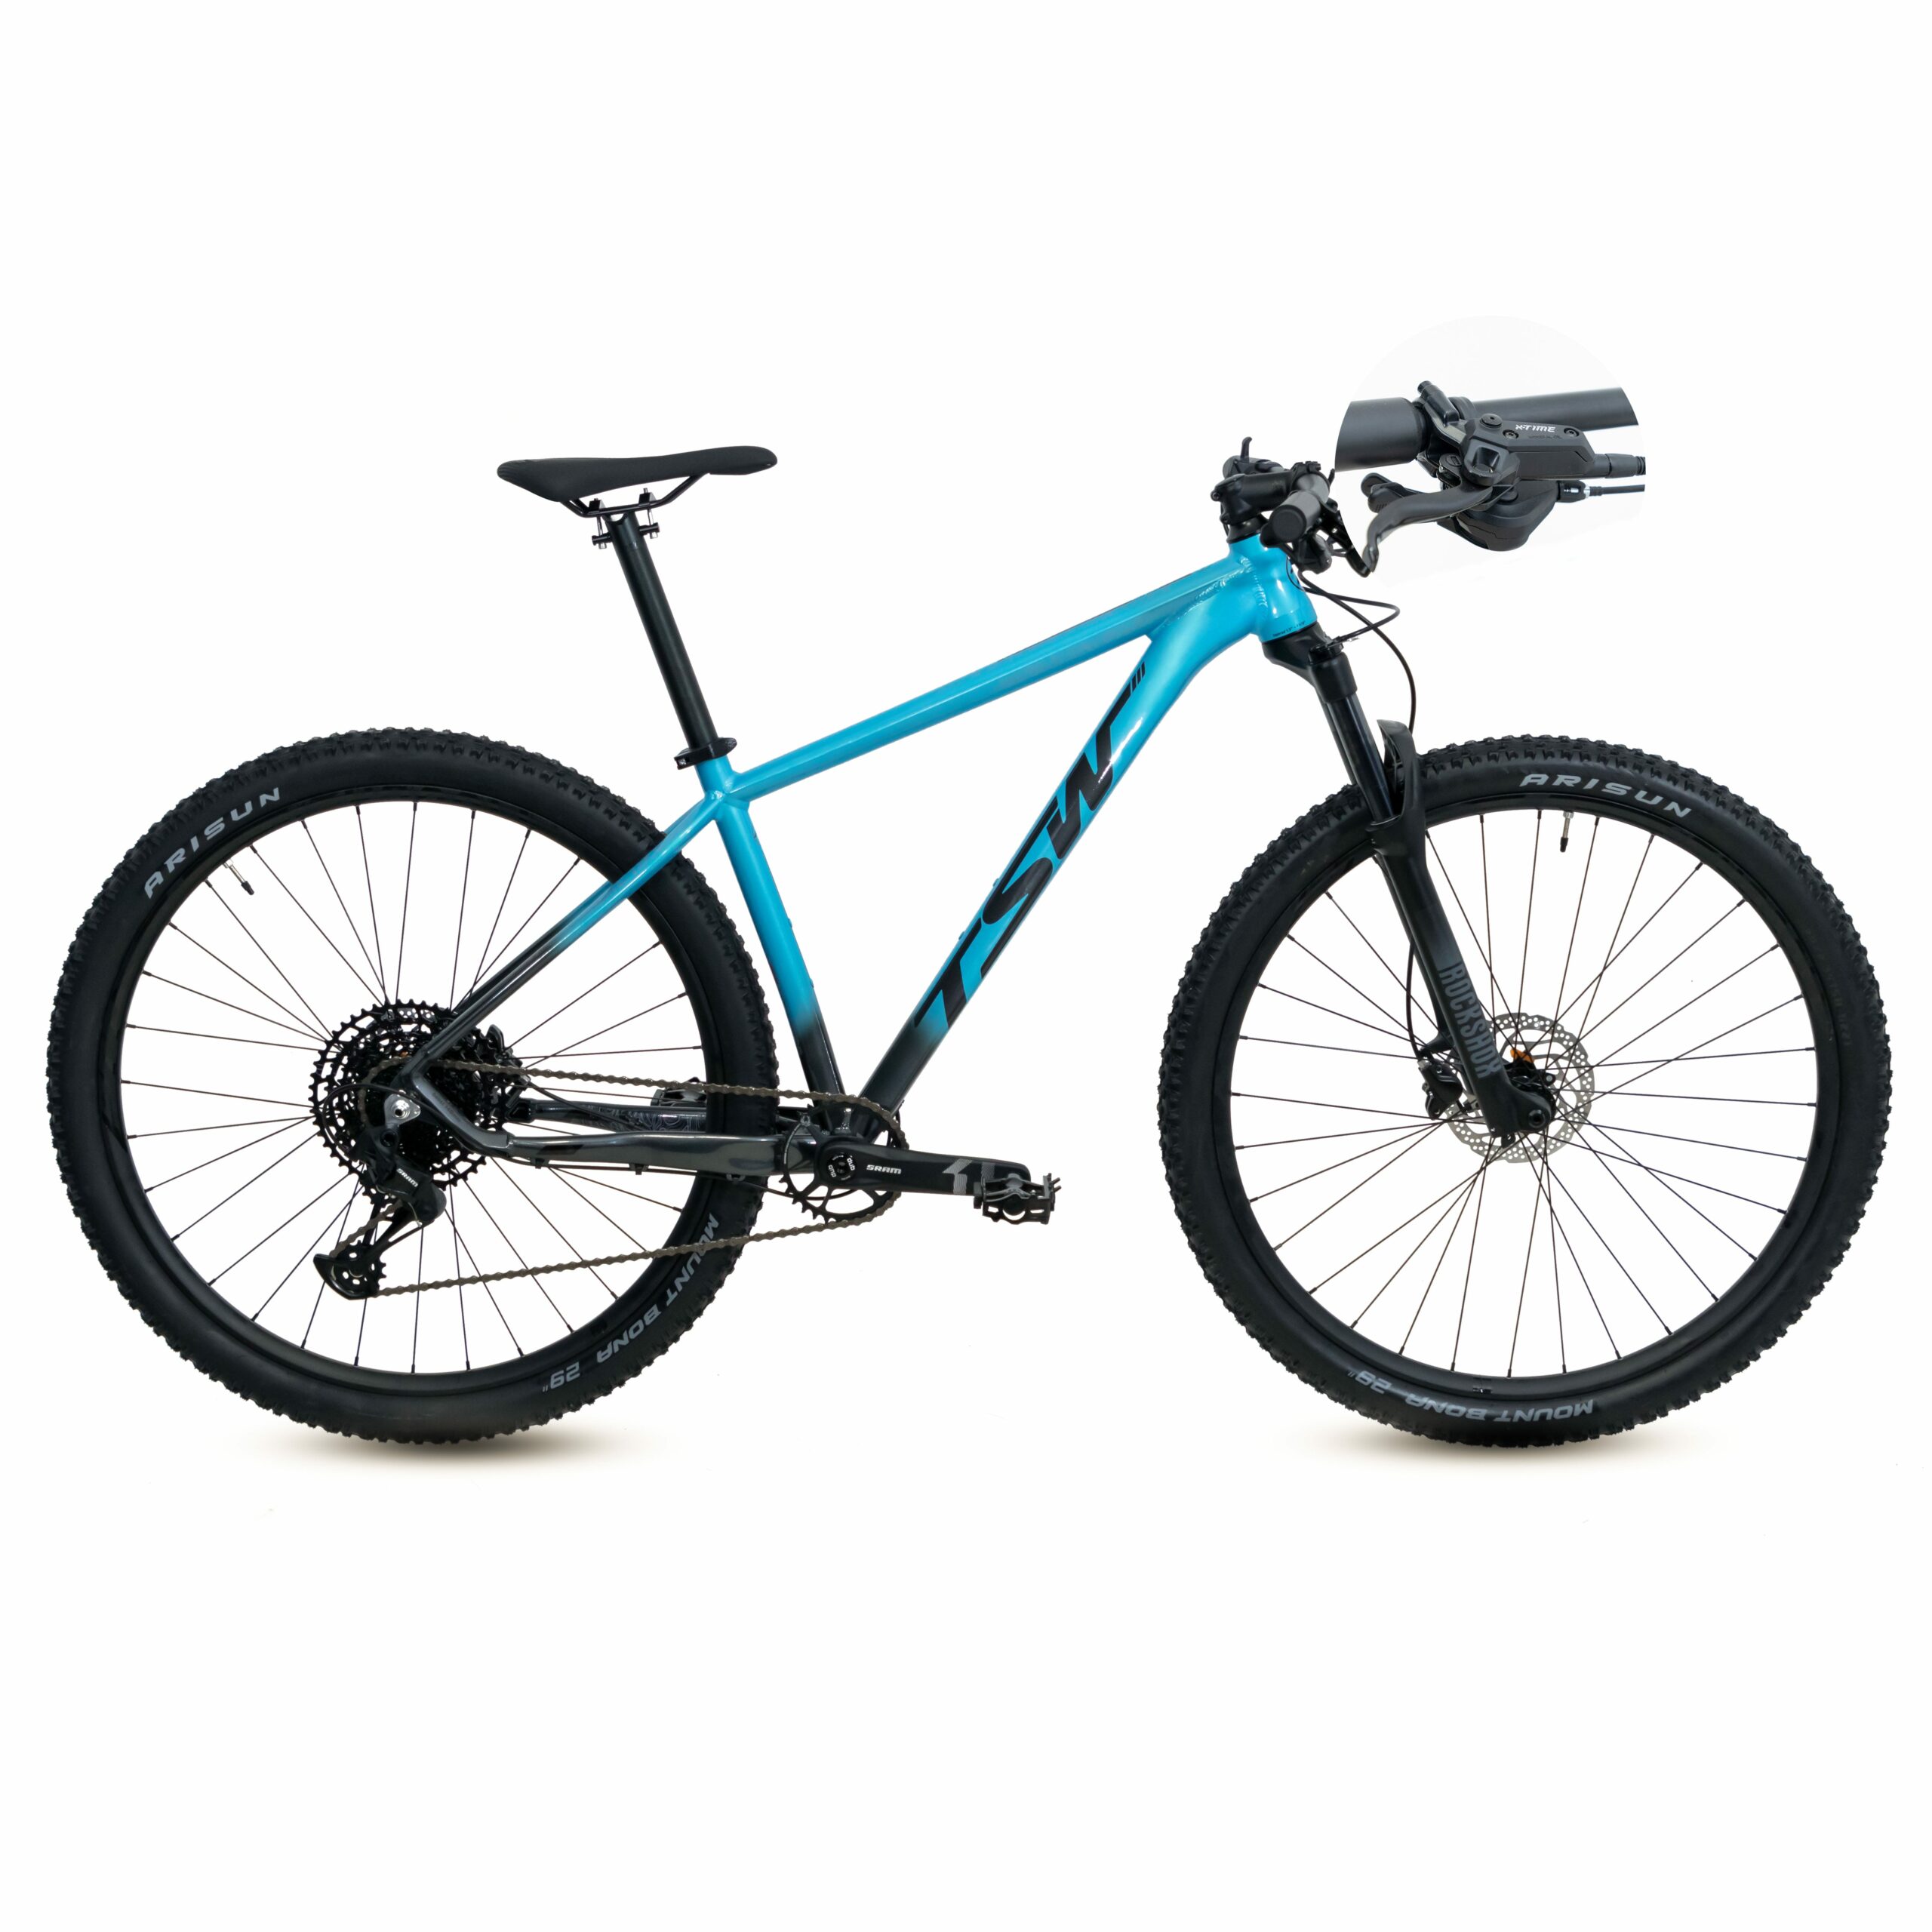 Bicicleta TSW Yukon Freio X-Time | SM-12 | 2021/2022 - 19", Azul/Cinza